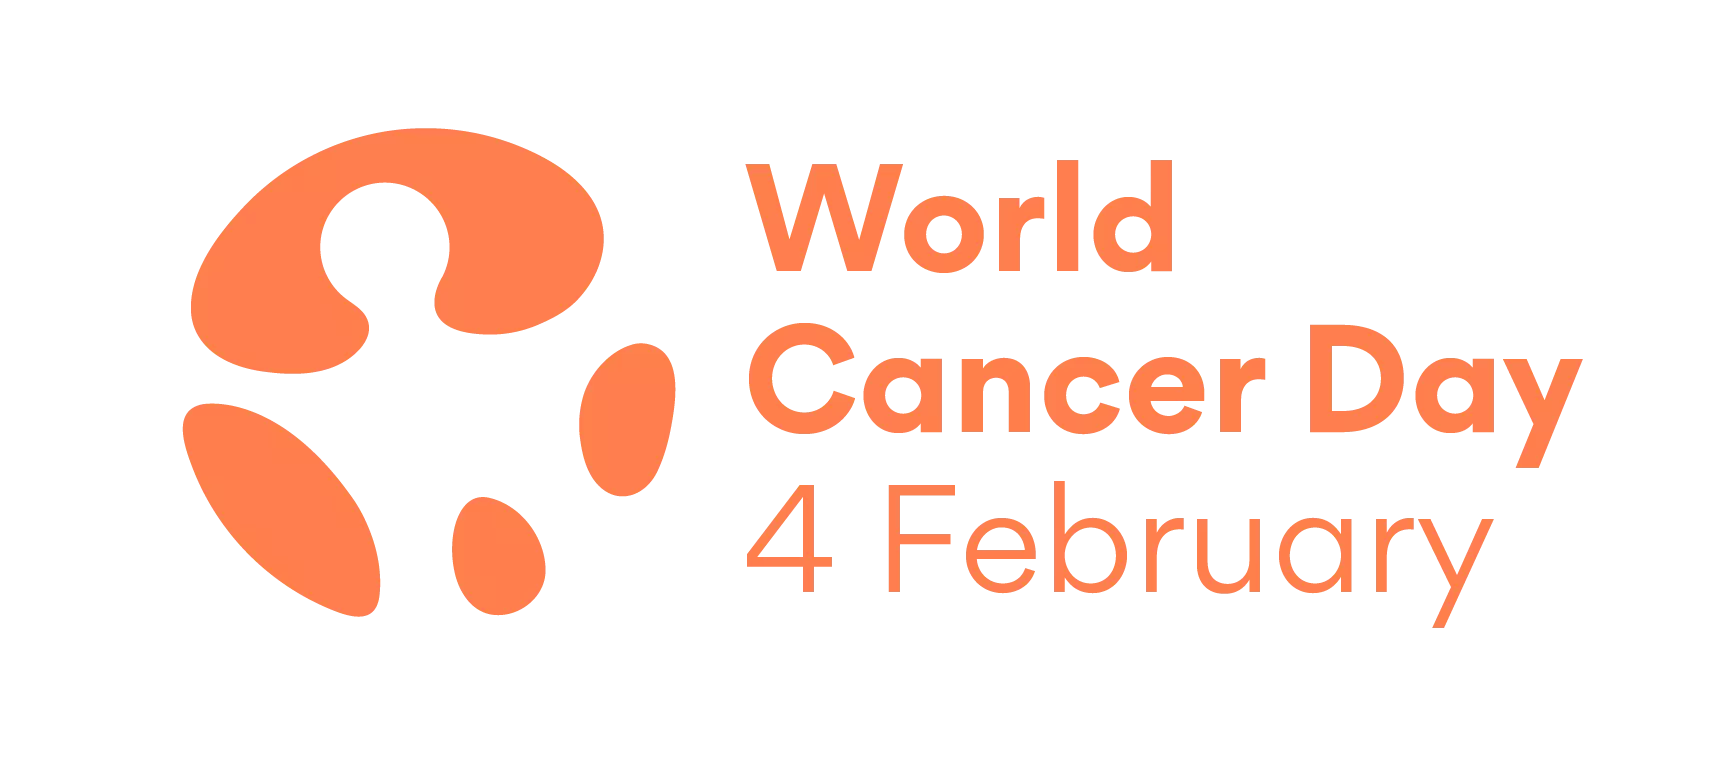 World Cancer Day 2022